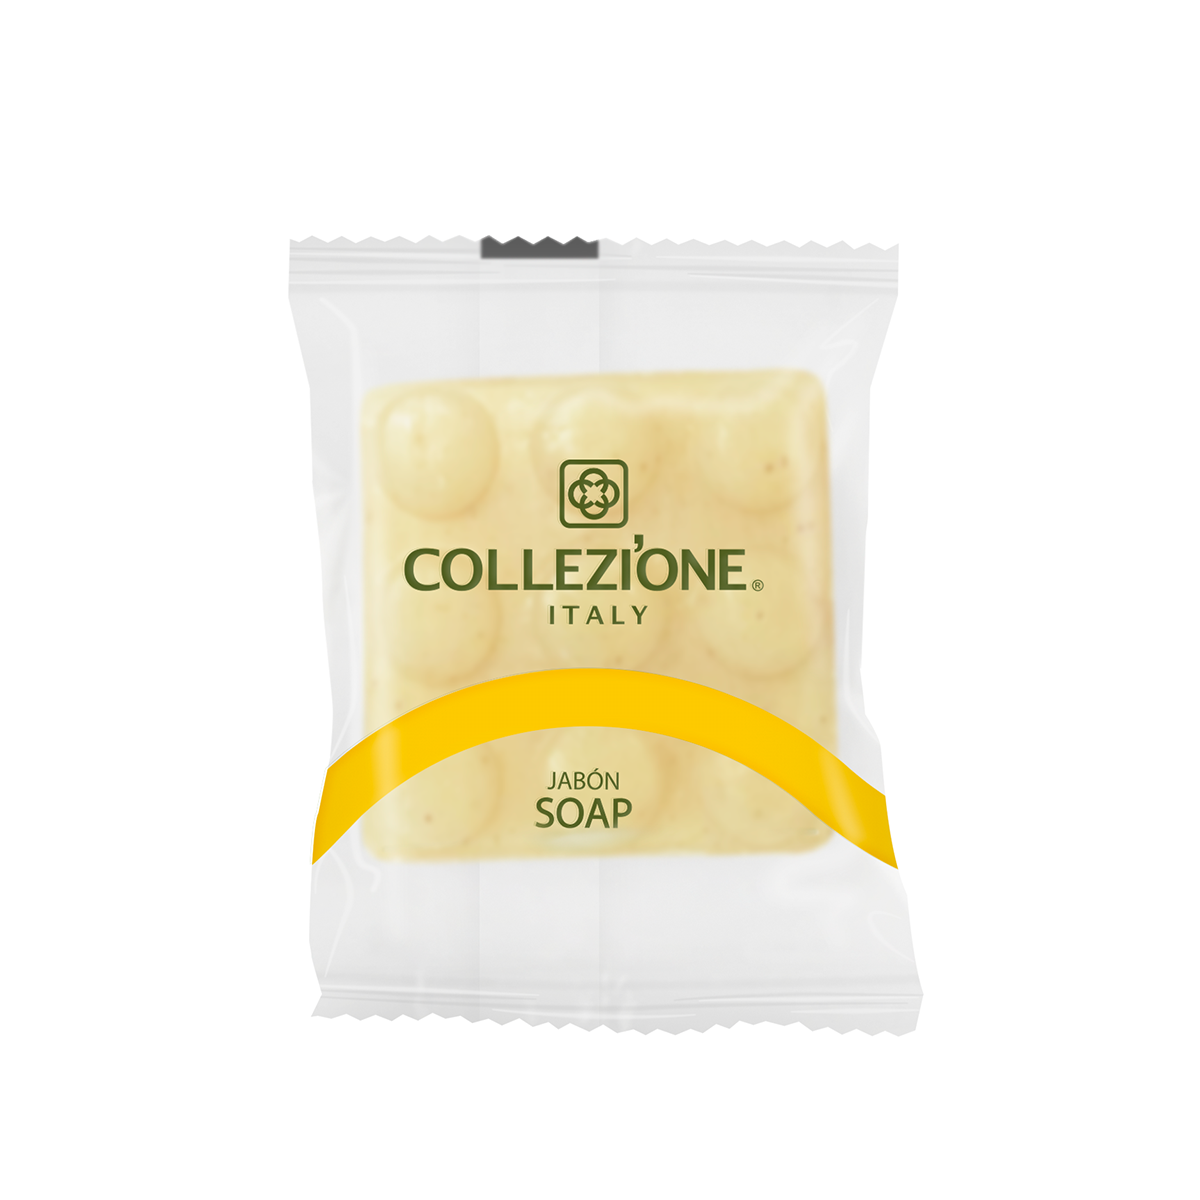 Jabón cuadrado con relieves 40 g Collezi'one